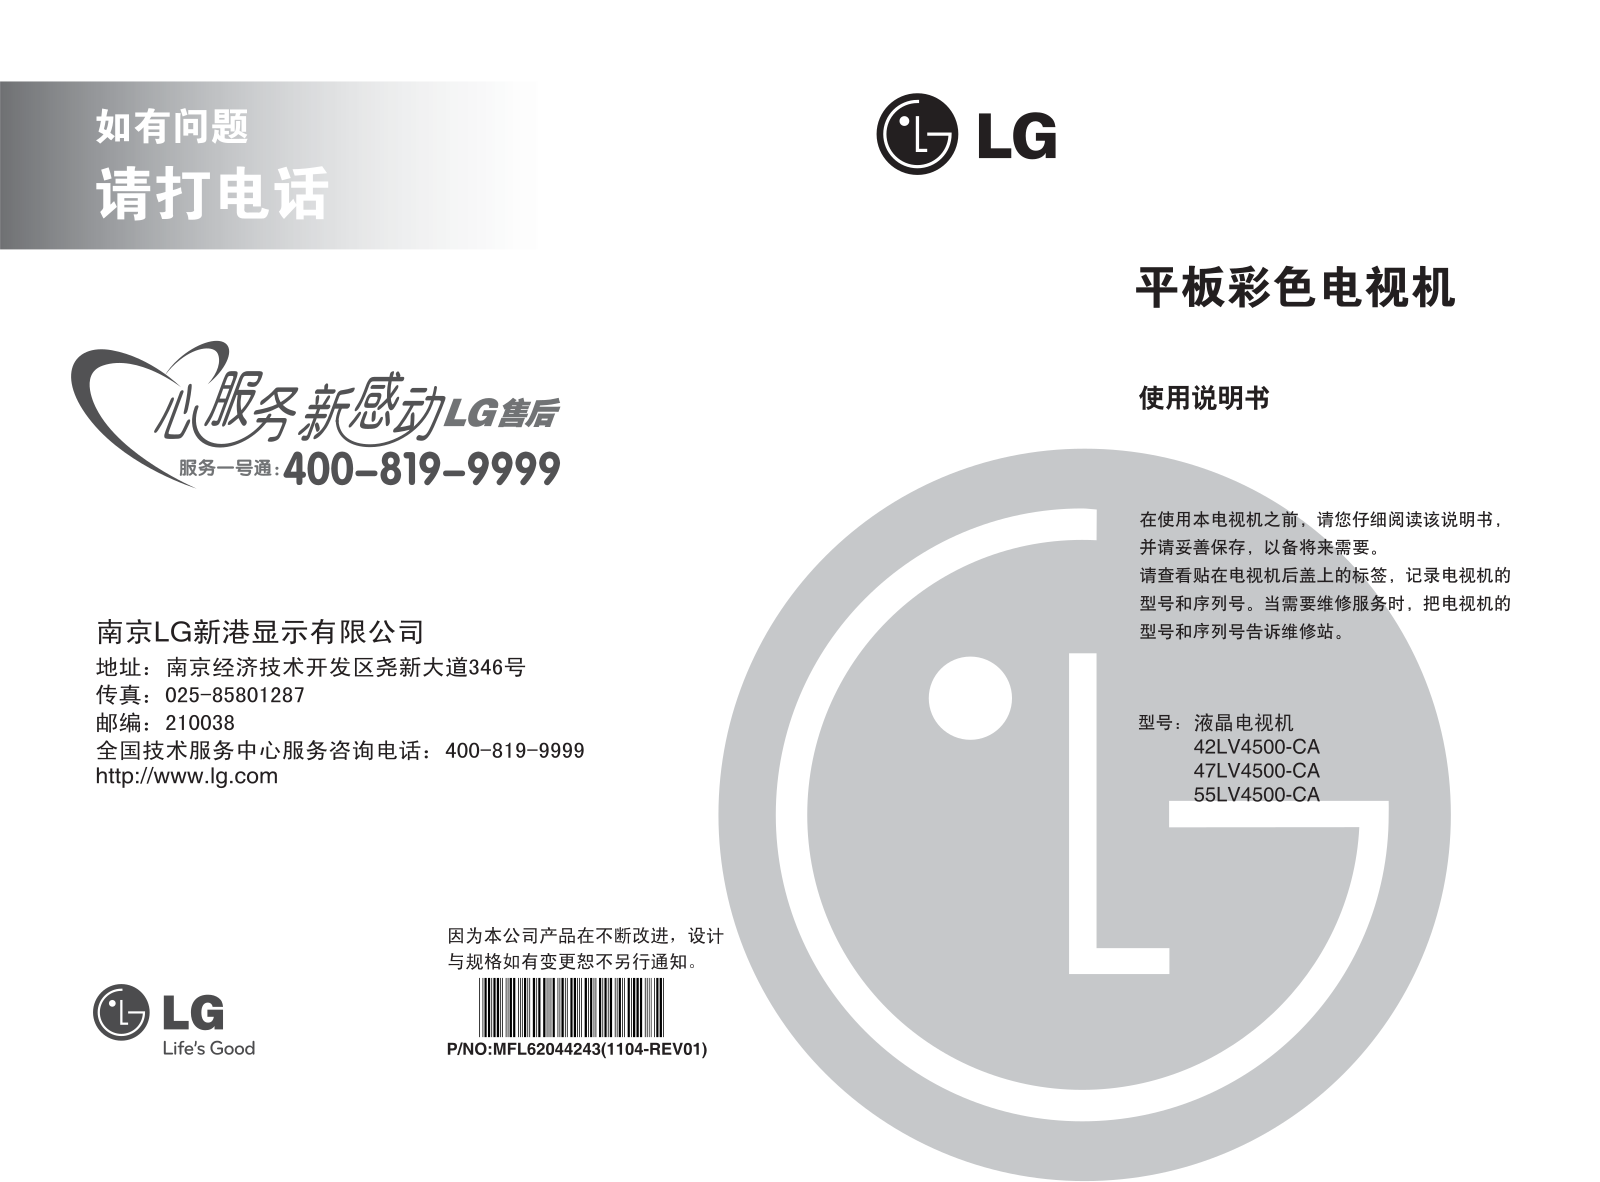 LG 55LV4500-CA User Manual